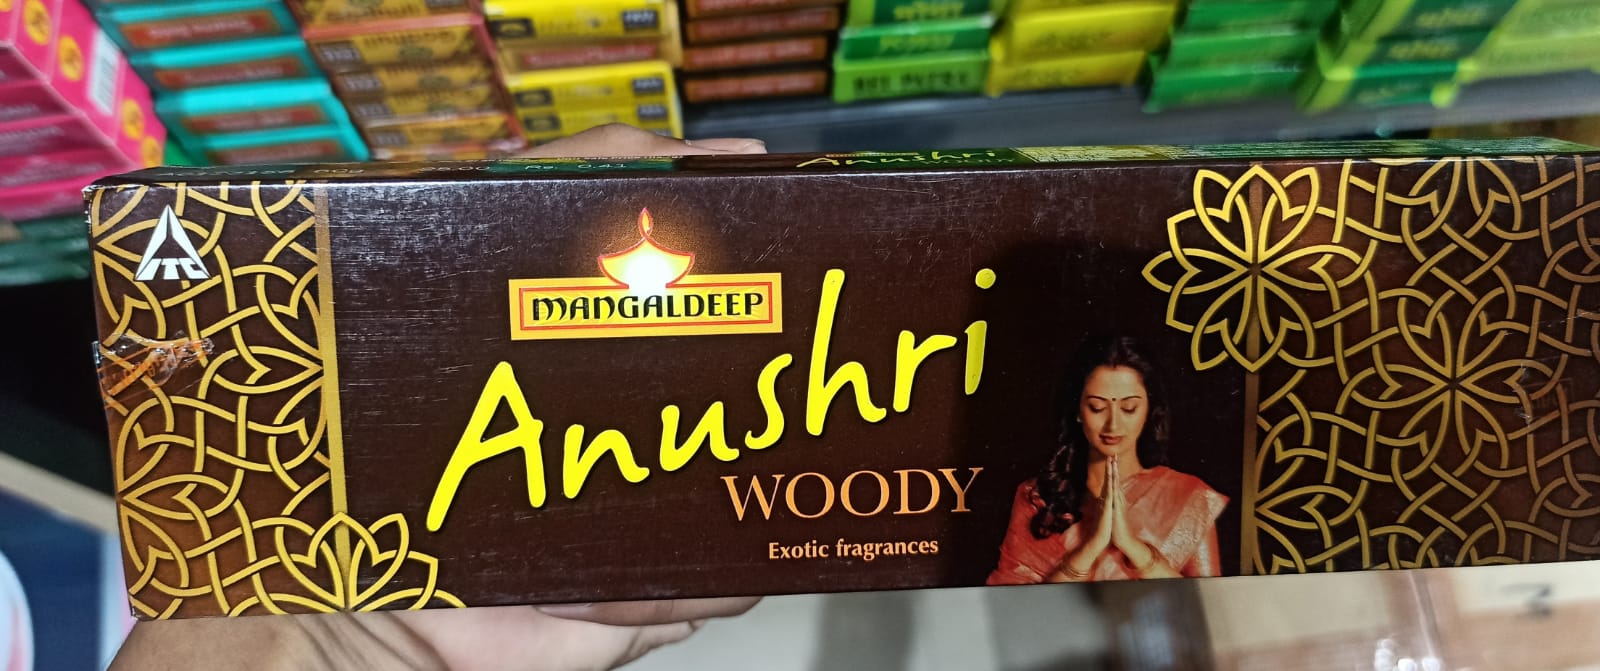 Mangaldeep Annushri woody 